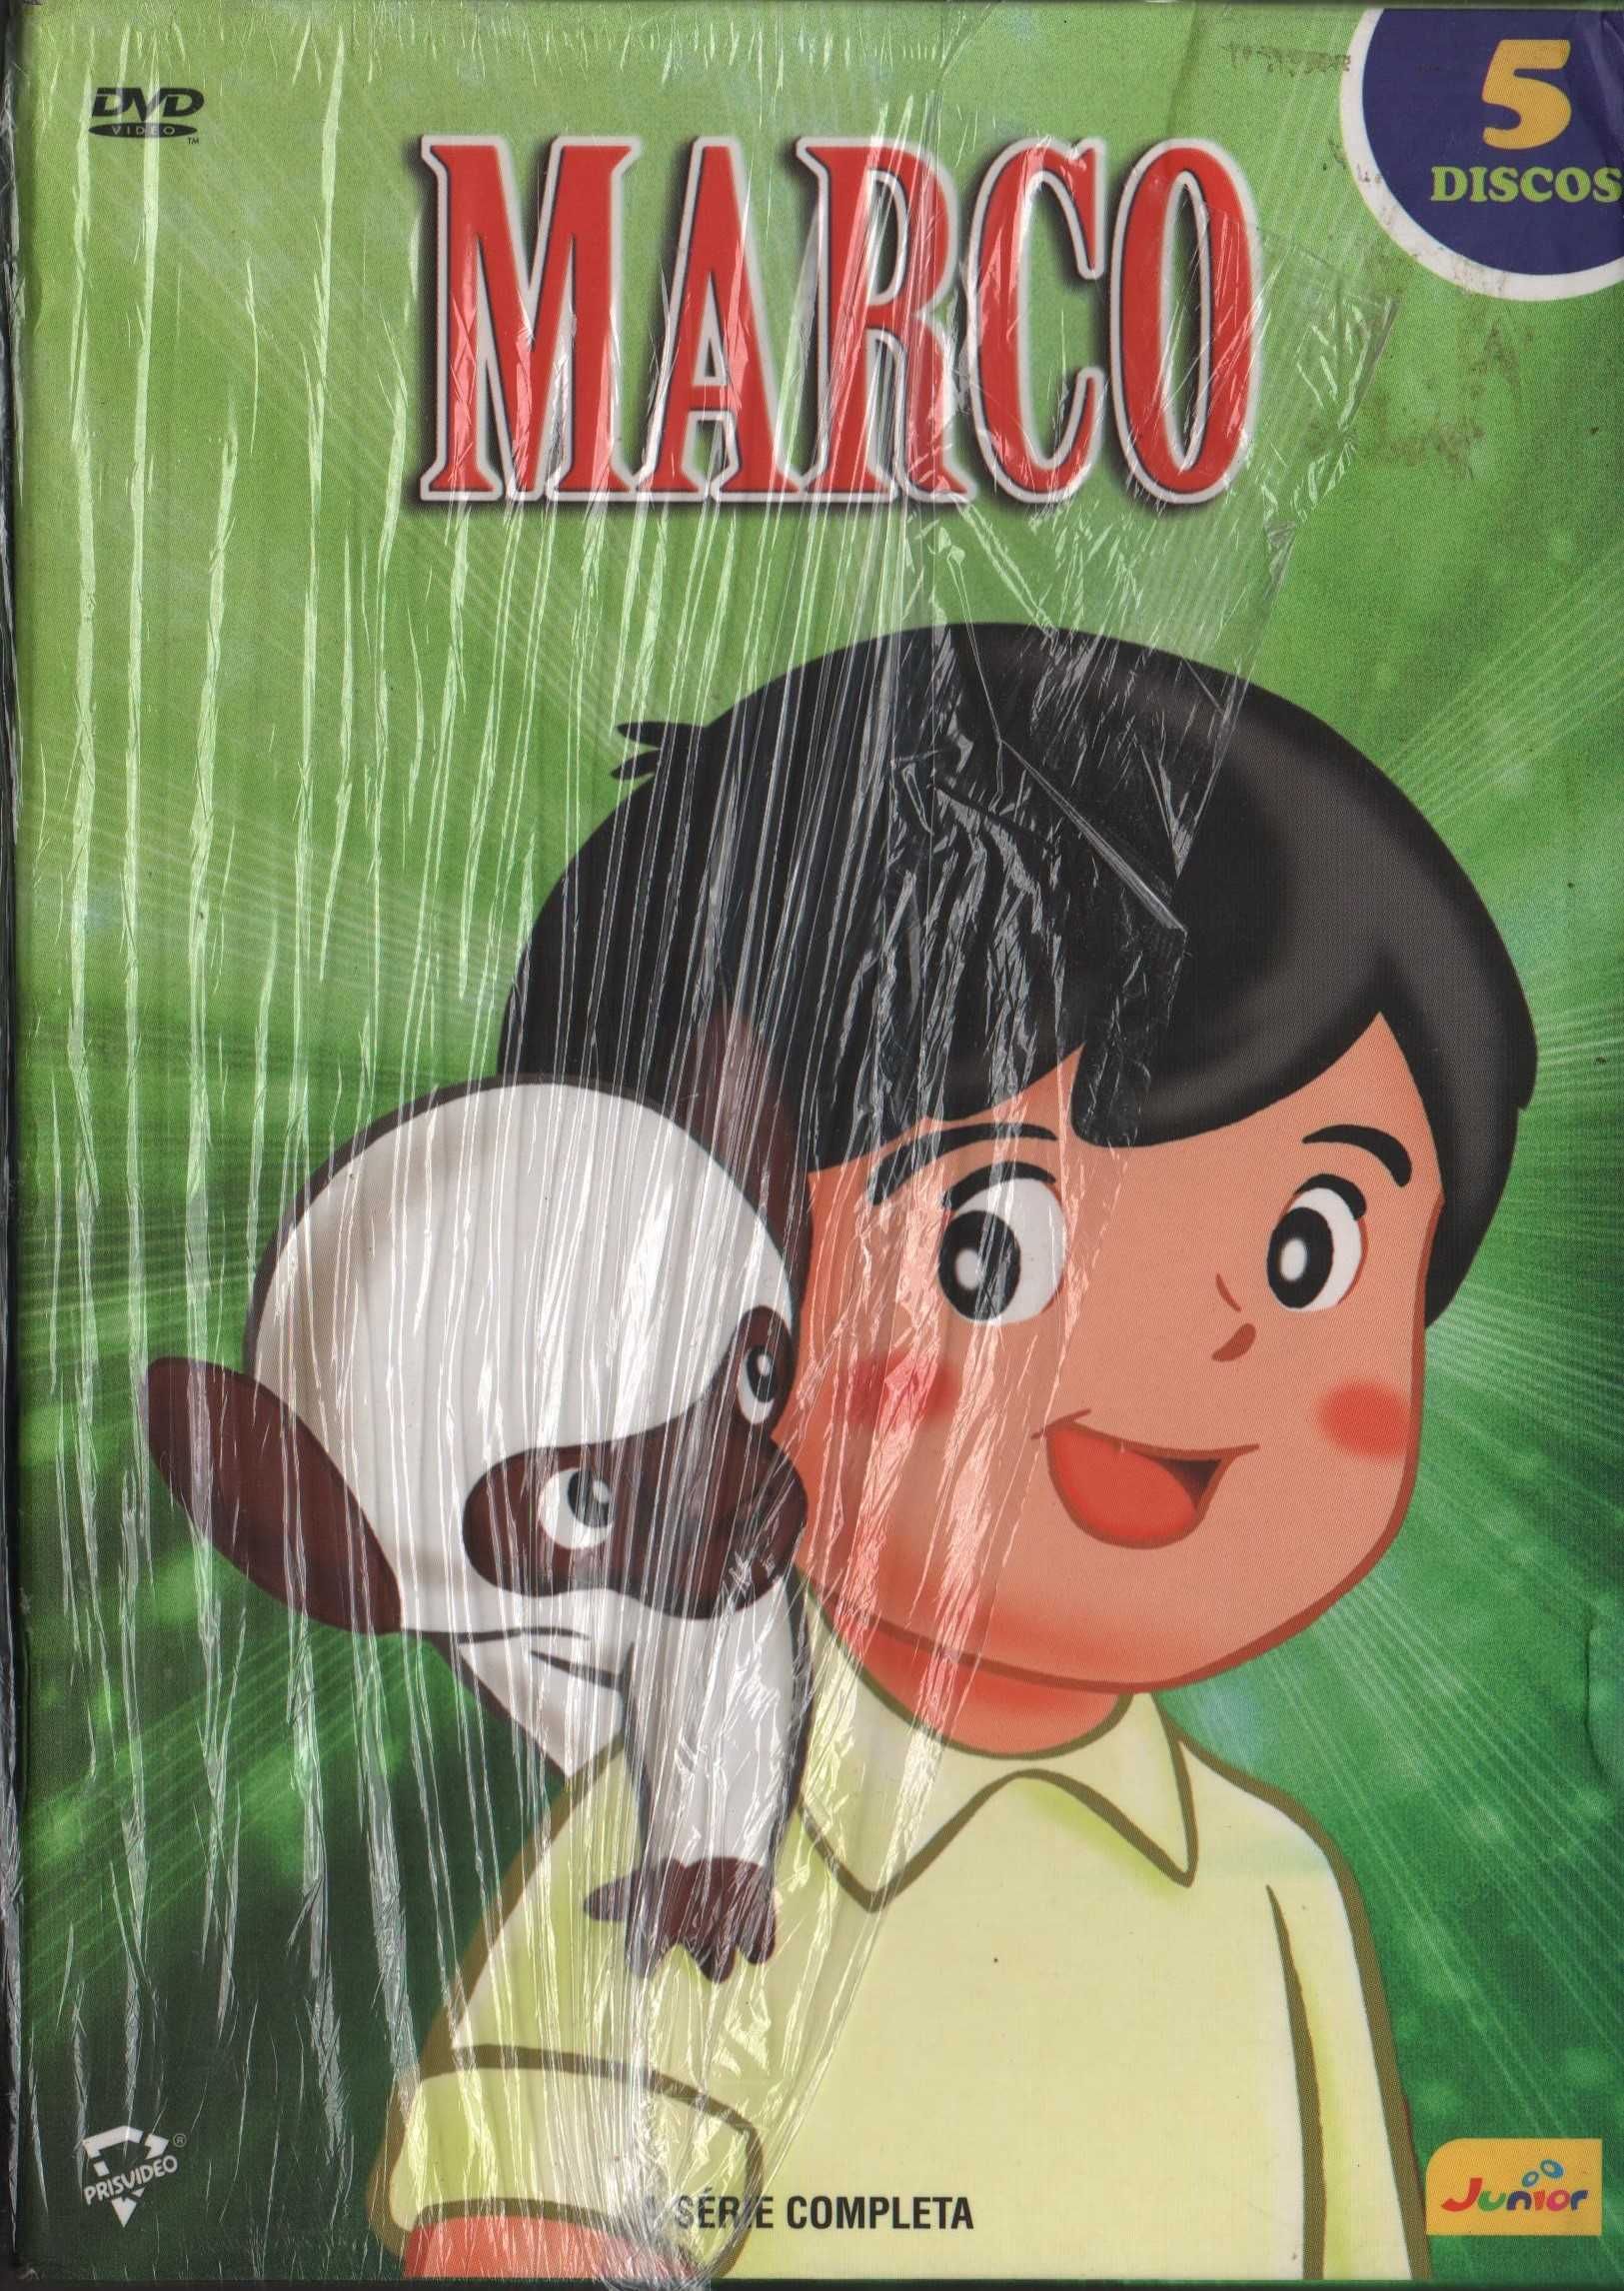 Caixa com todos os filmes do Marco - animação - 5 dvd's - extras